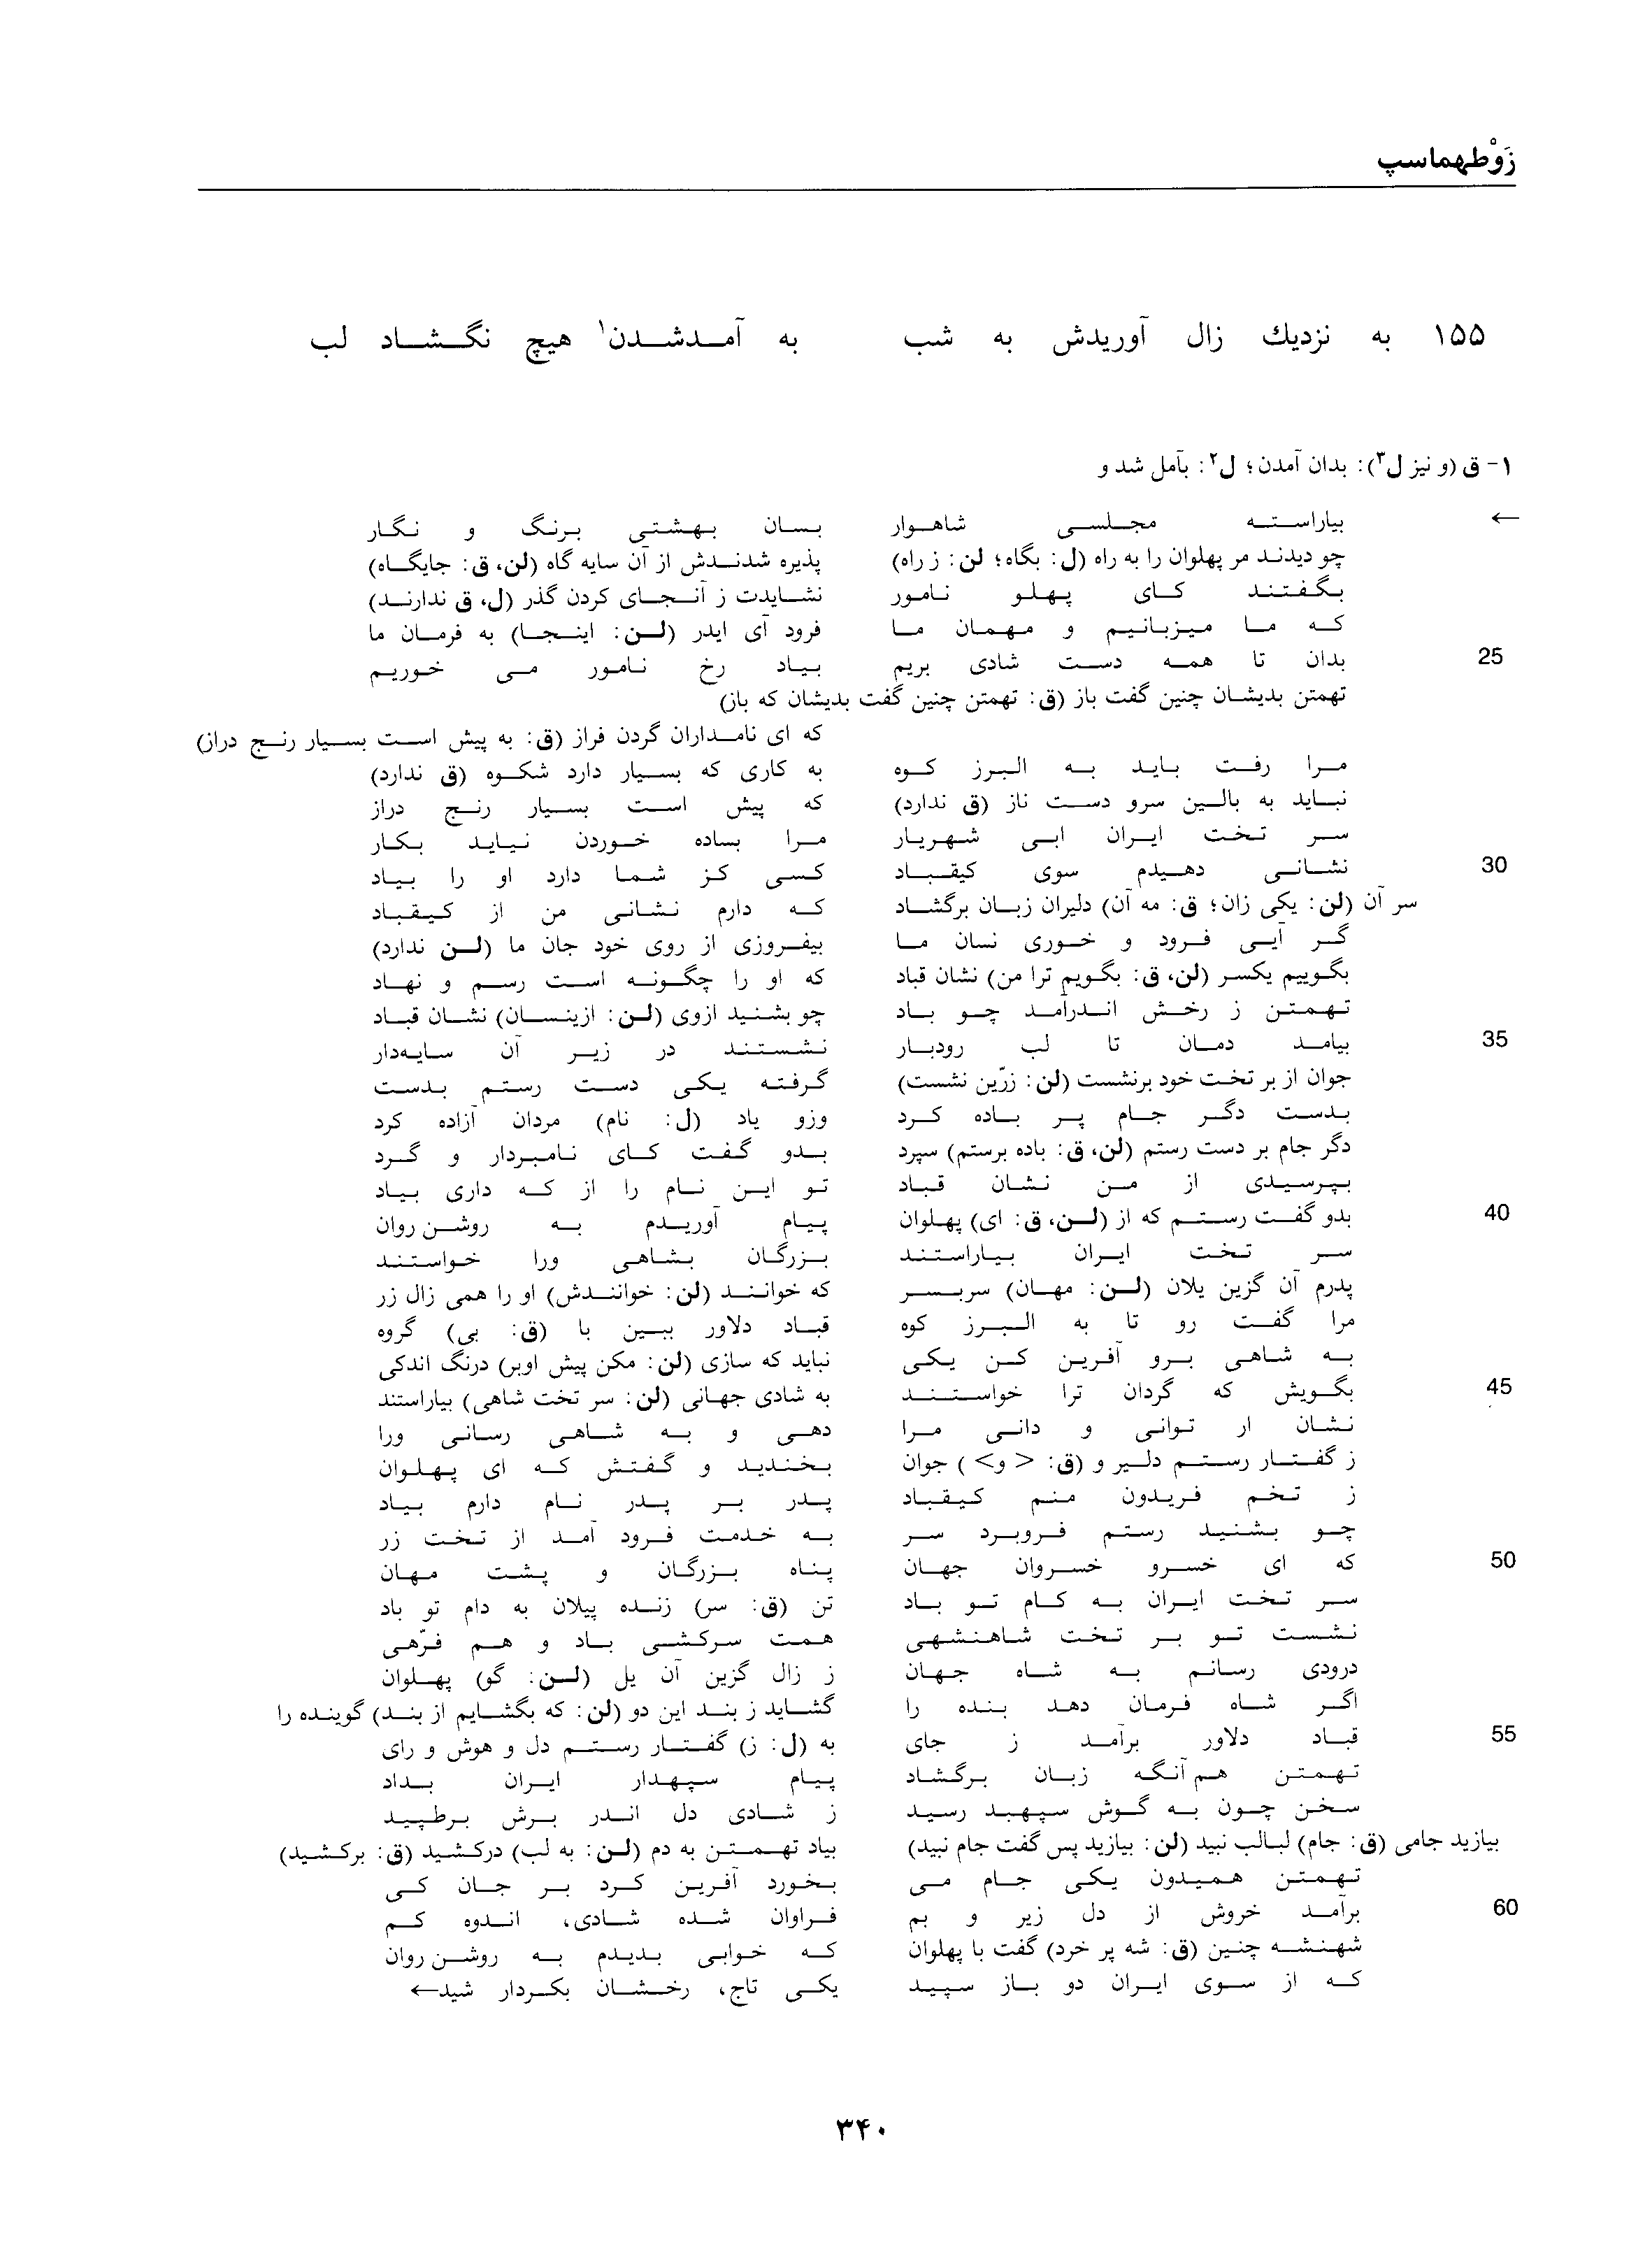 vol. 1, p. 340